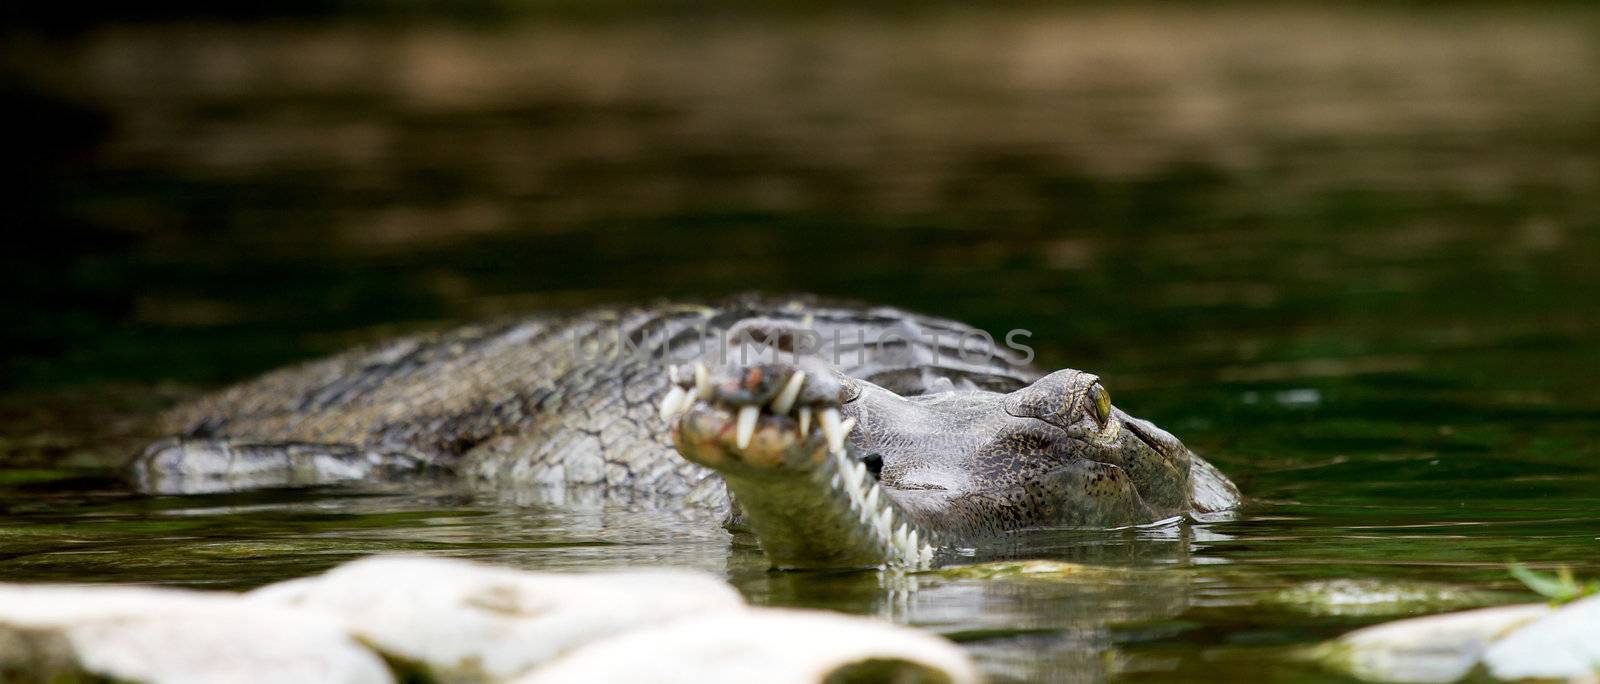 Closeup of crocodile in water